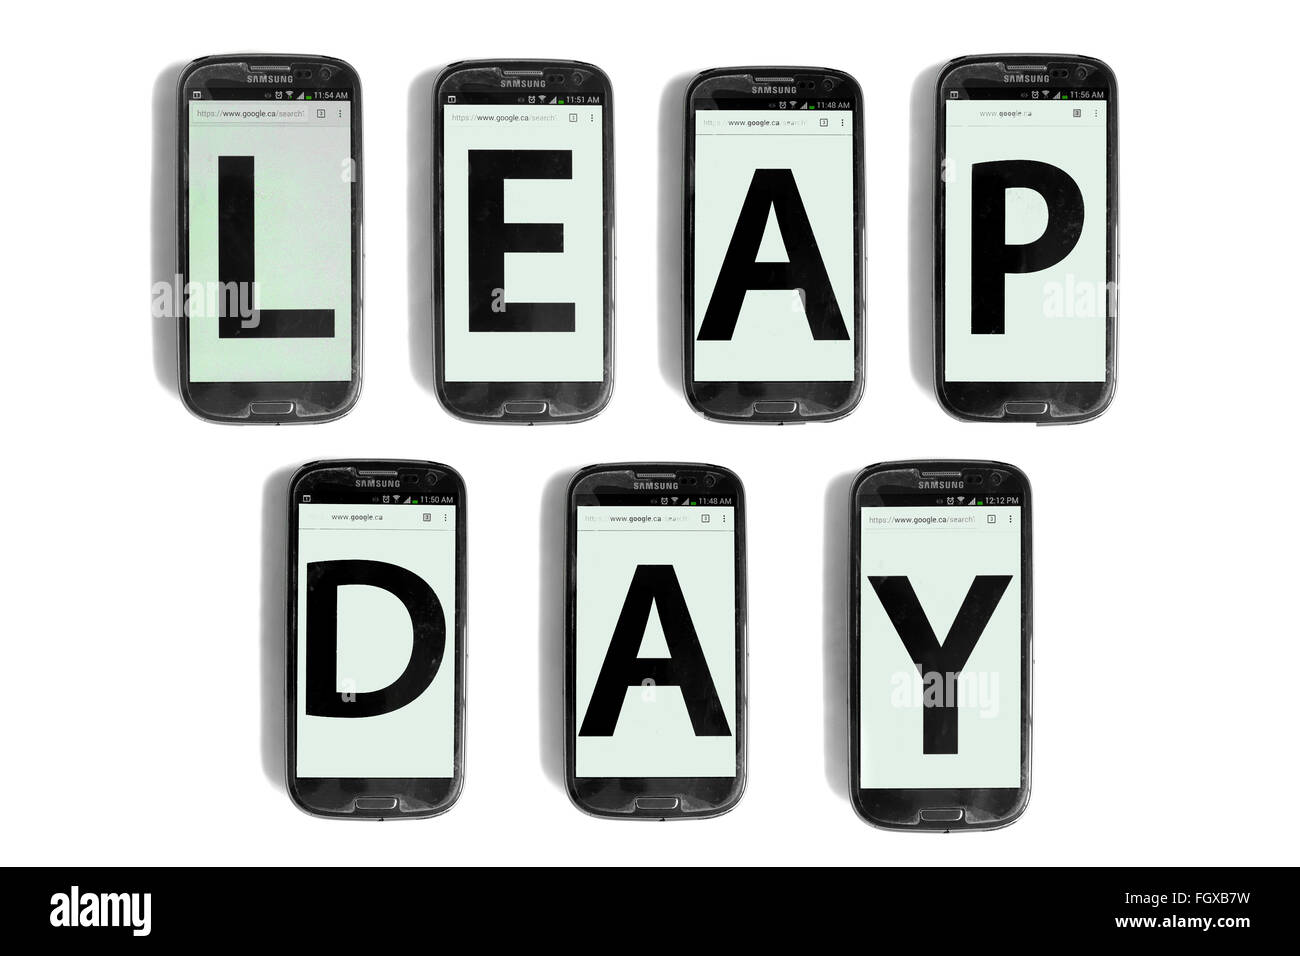 Leap Day écrit sur les écrans de smartphones photographié sur un fond blanc. Banque D'Images